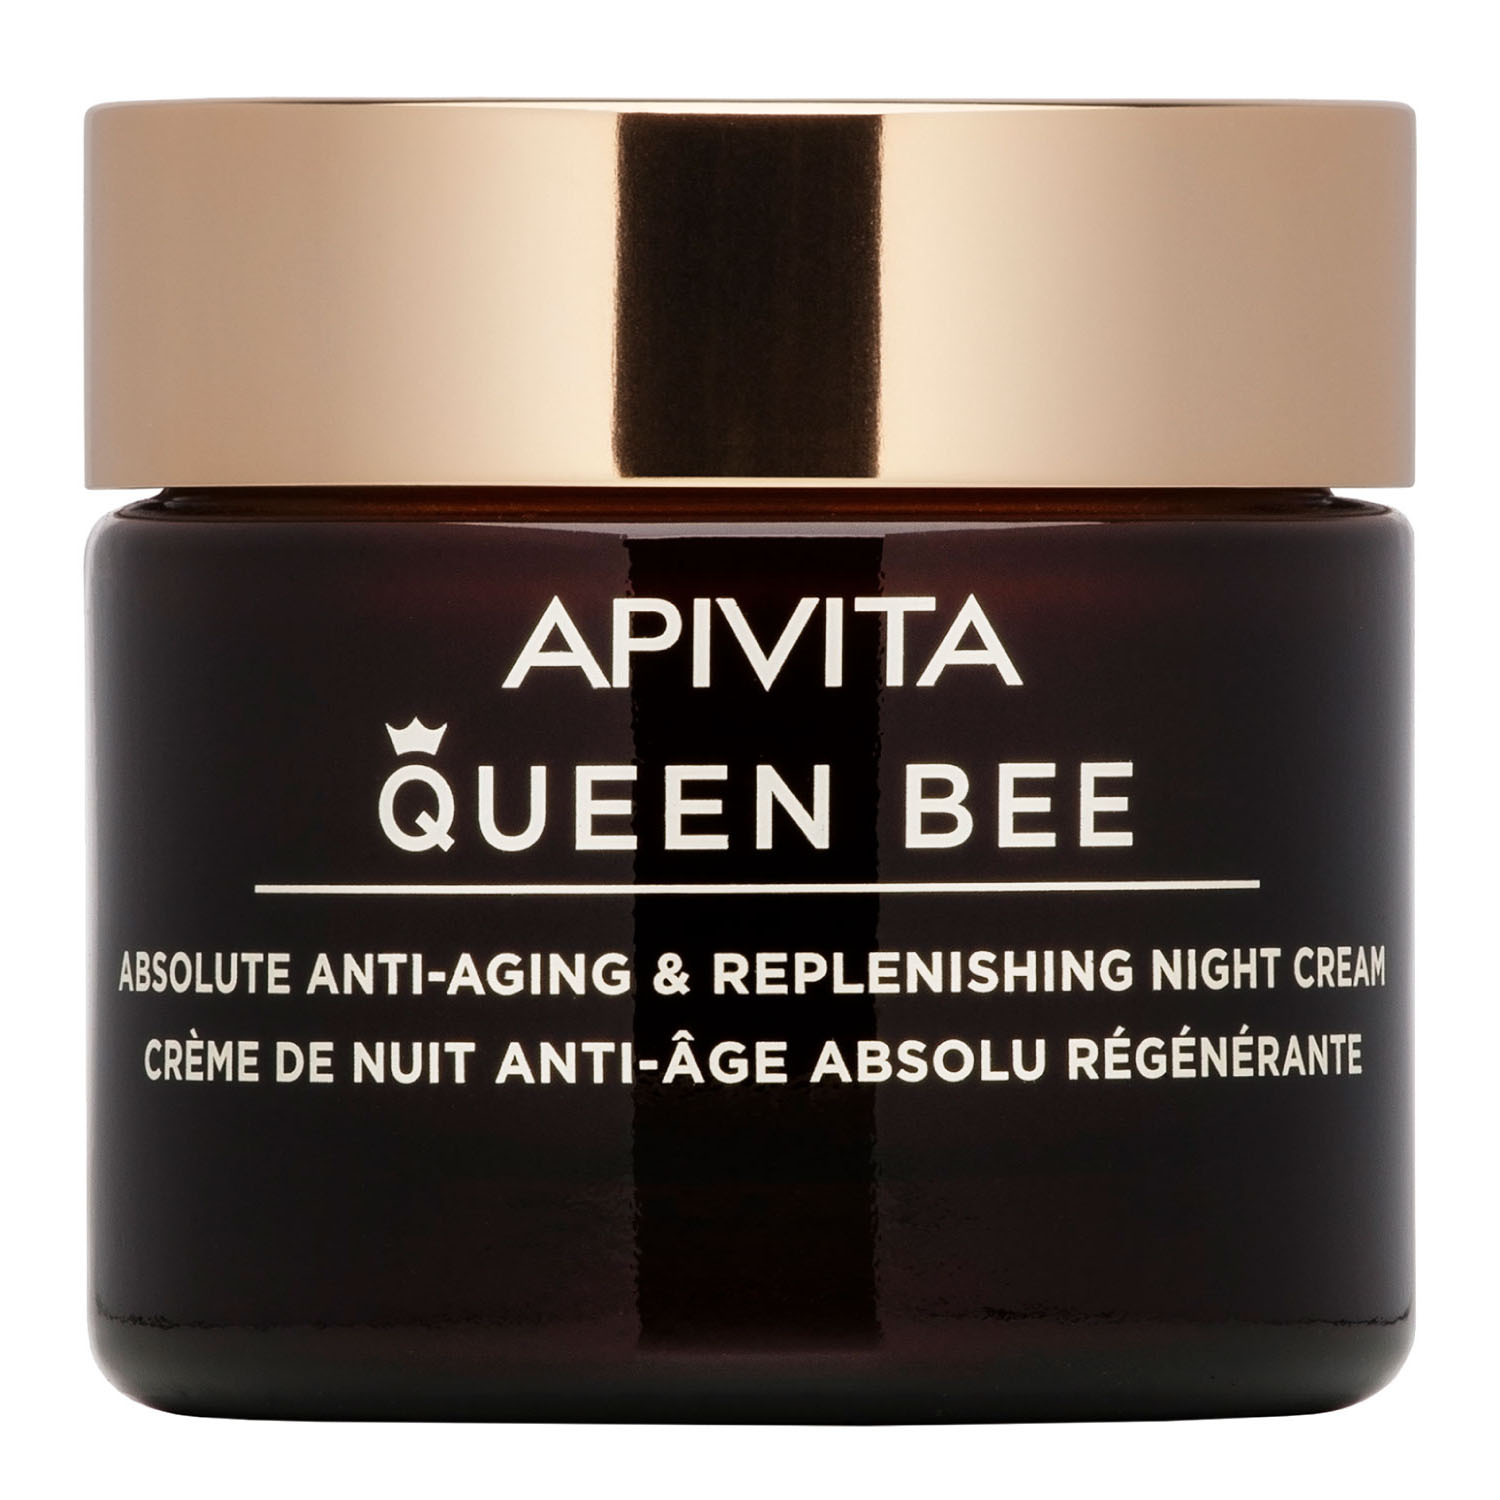 Apivita Комплексный восстанавливающий ночной крем, 50 мл (Apivita, Queen Bee) apivita комплексный уход с легкой текстурой 50 мл apivita queen bee